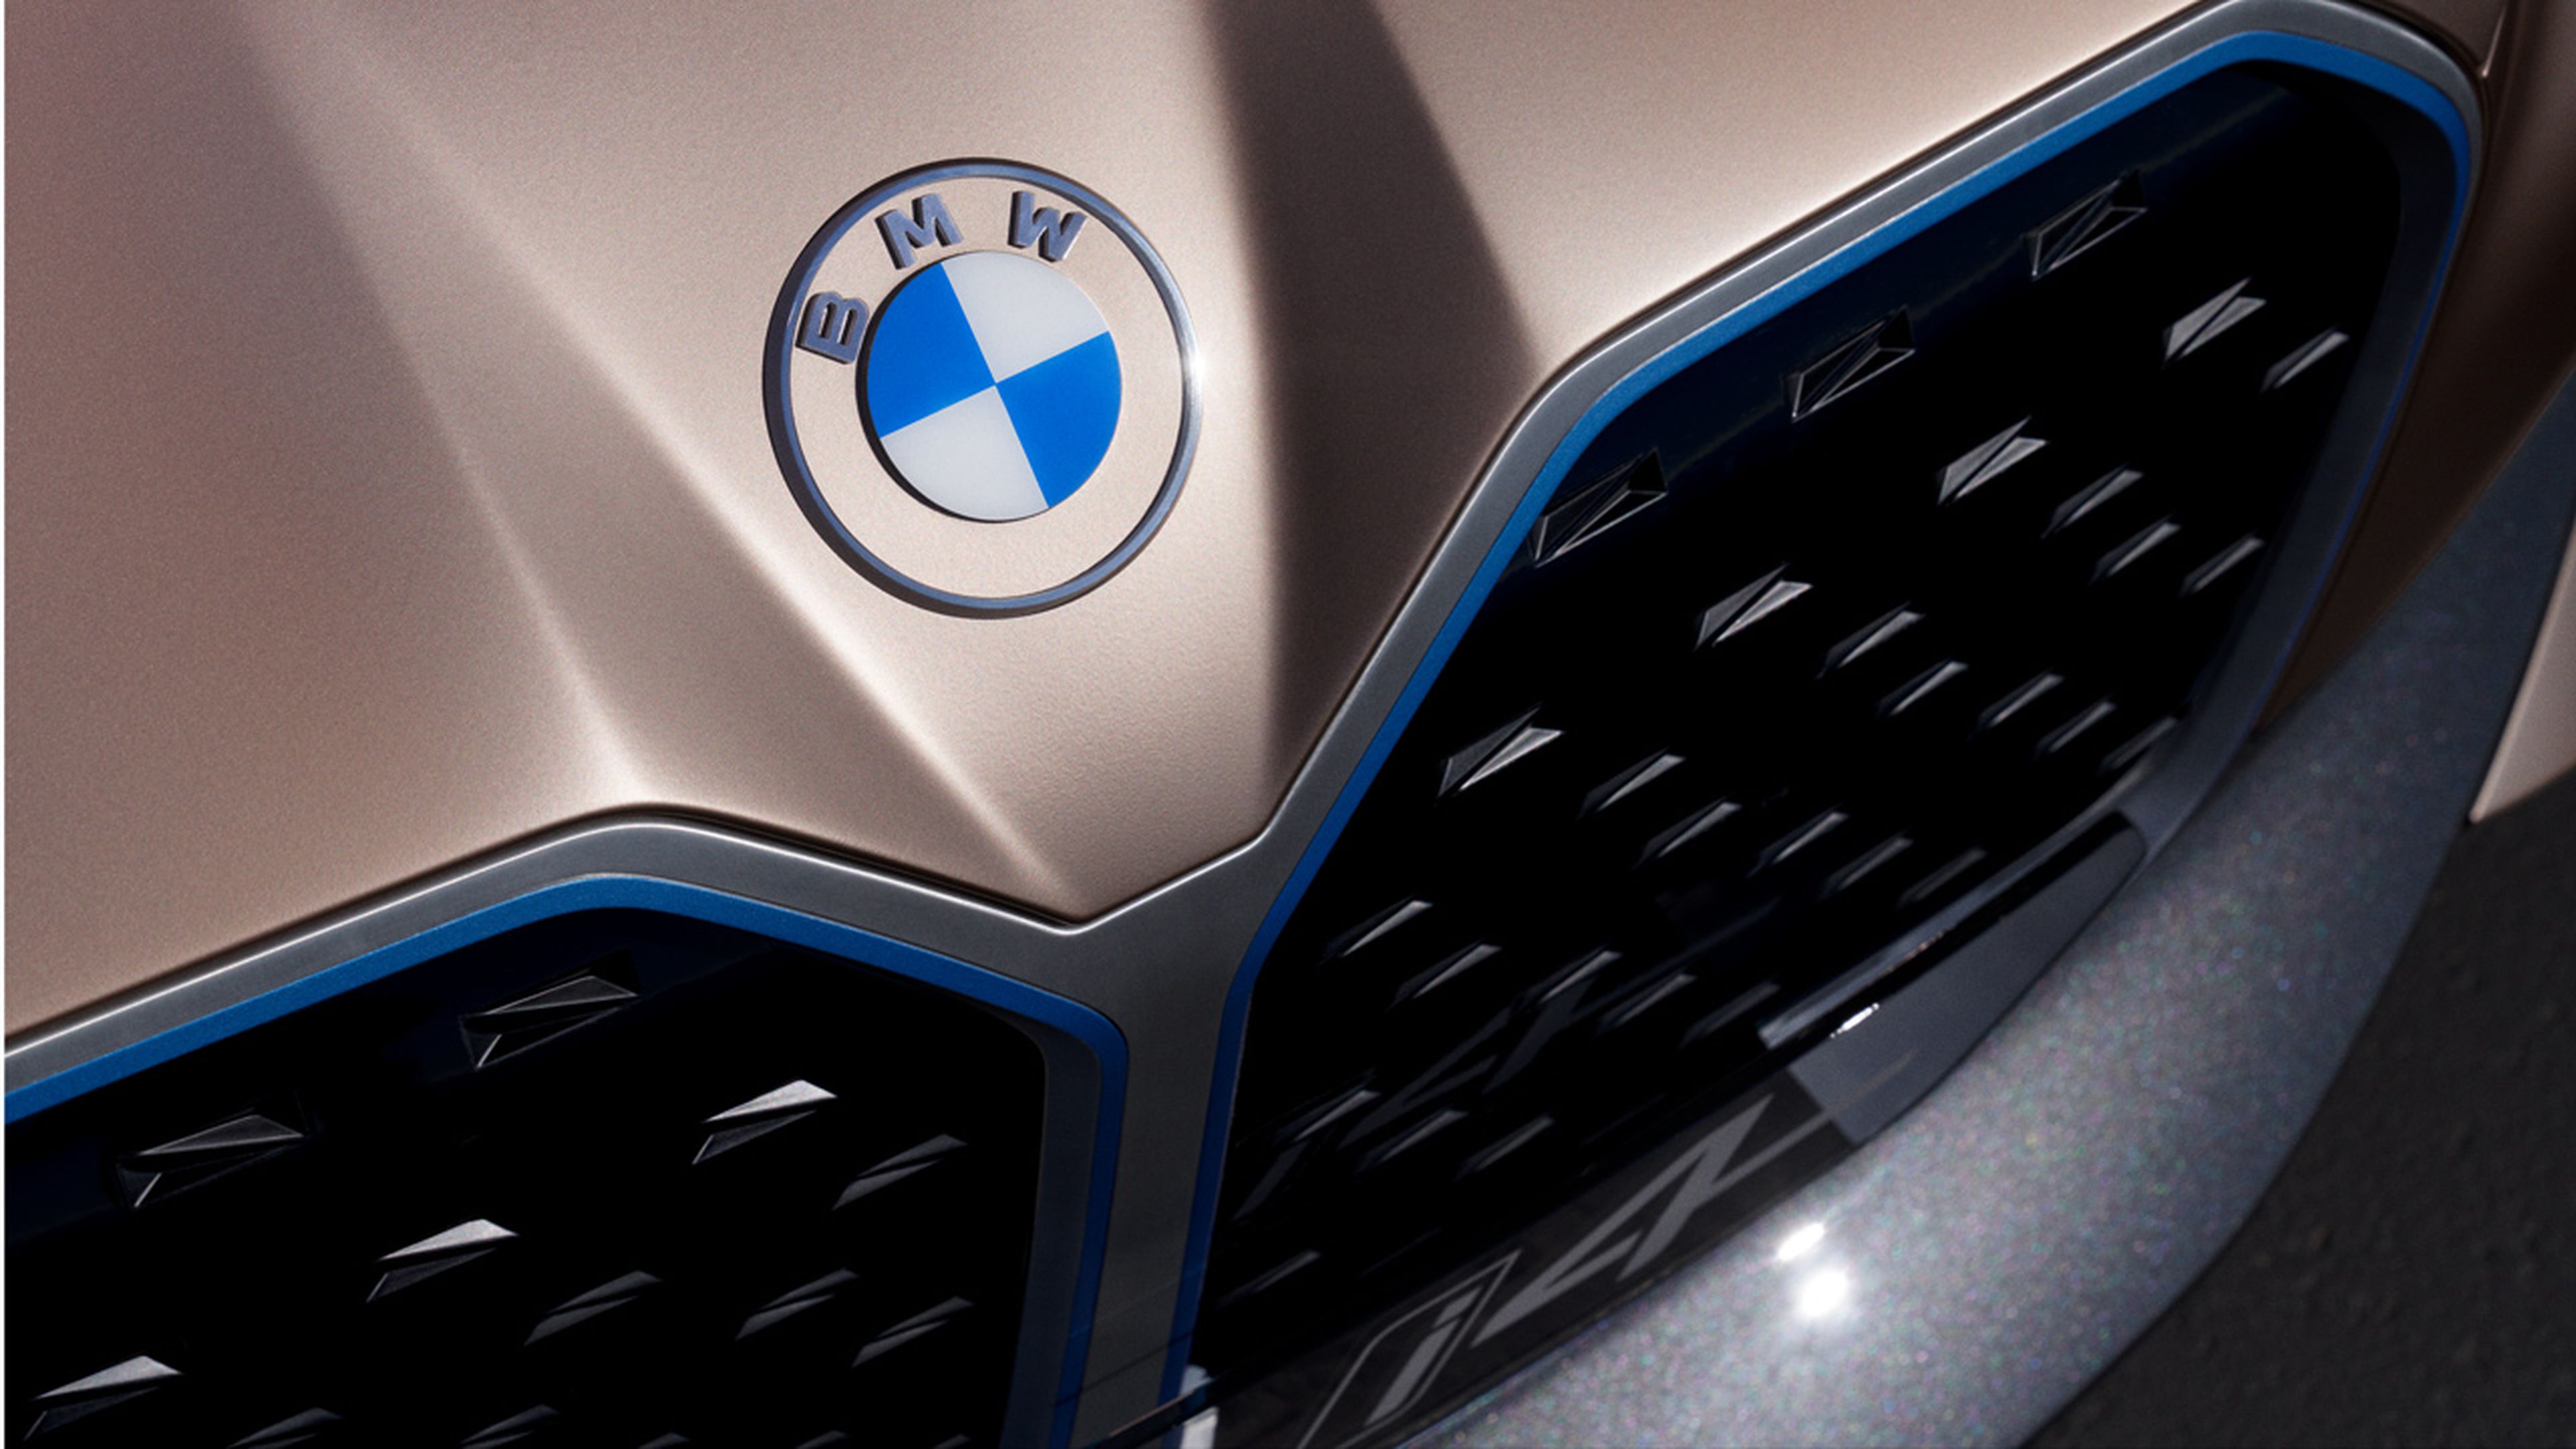 El logo de BMW en el Concept i4